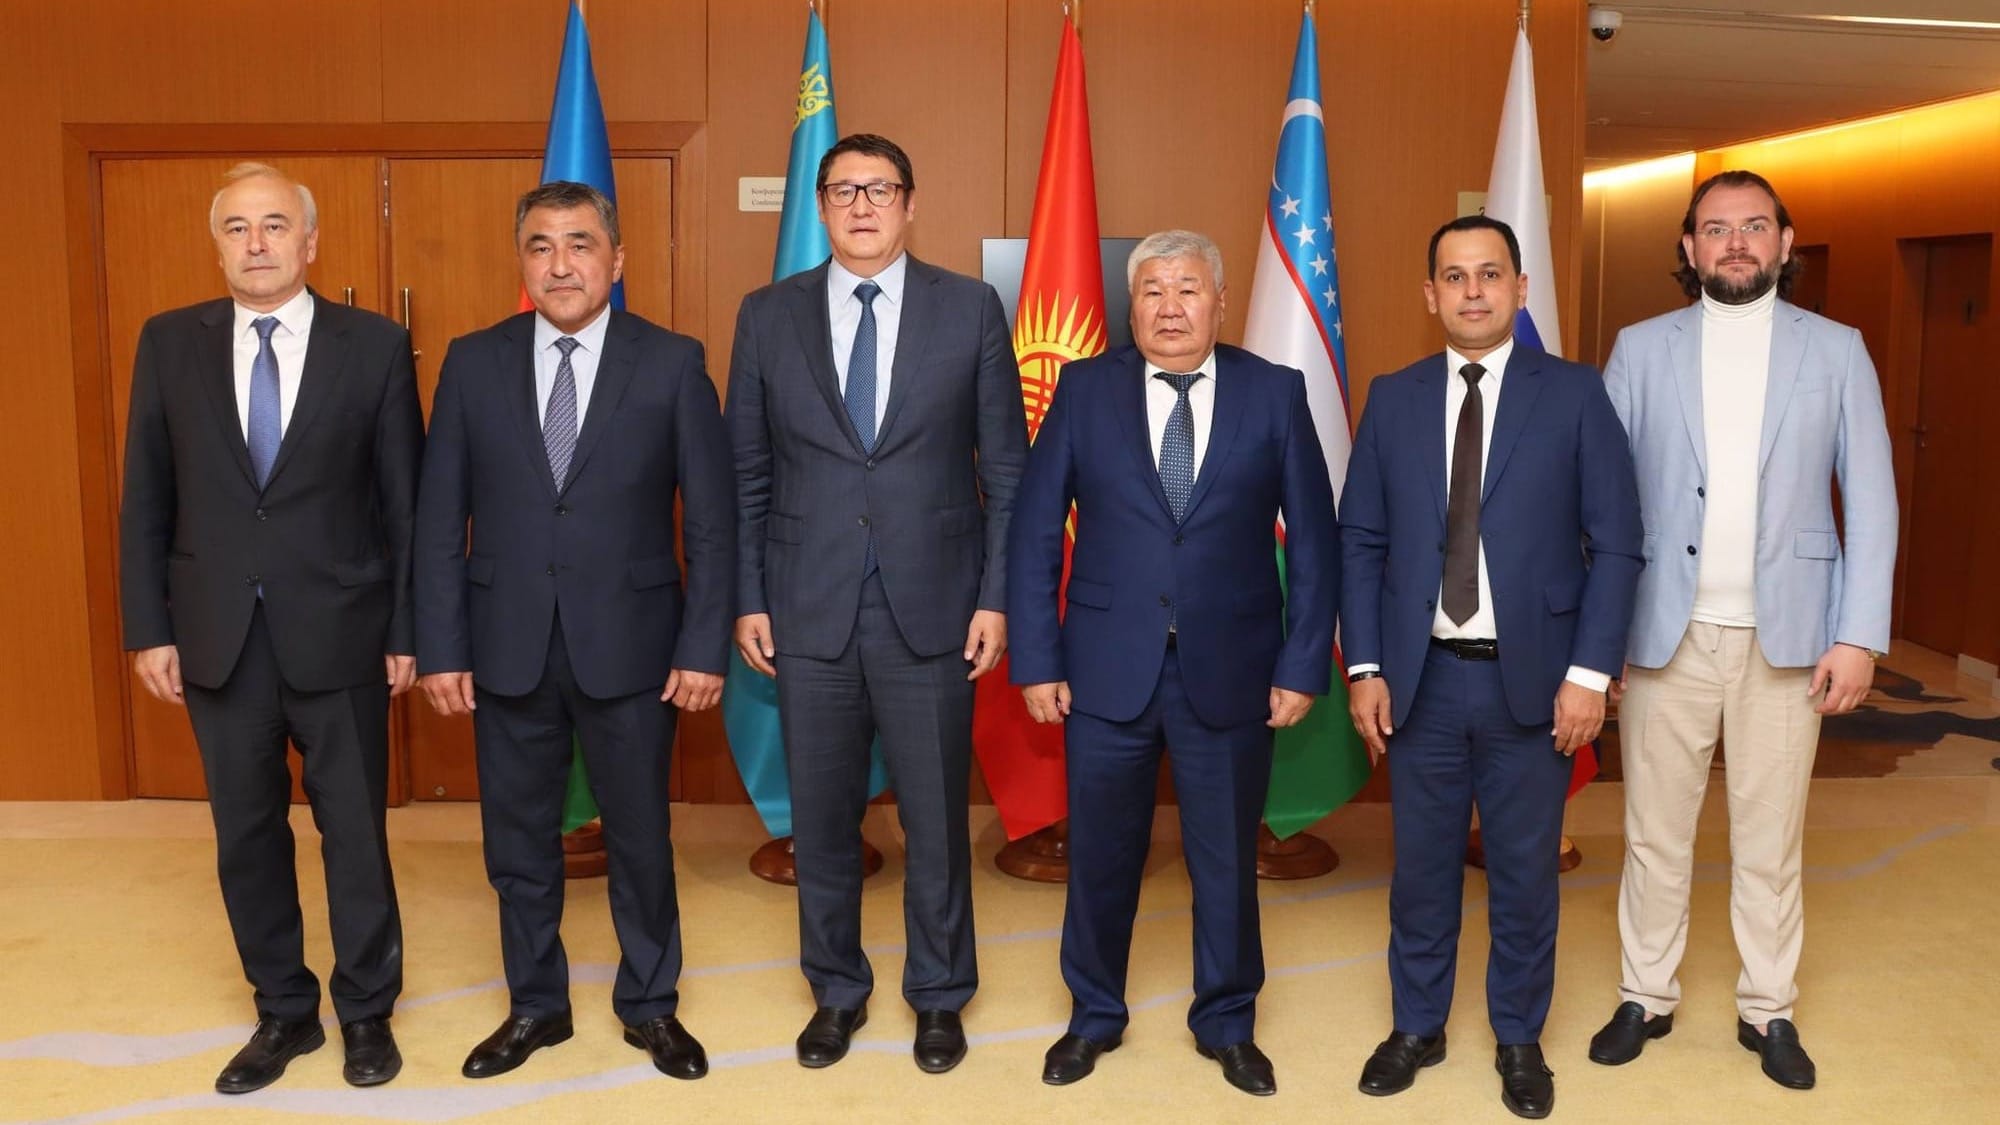 Кыргызстан обсудил с партнерами возможности импорта электроэнергии зимой и проект Камбаратинской ГЭС-1